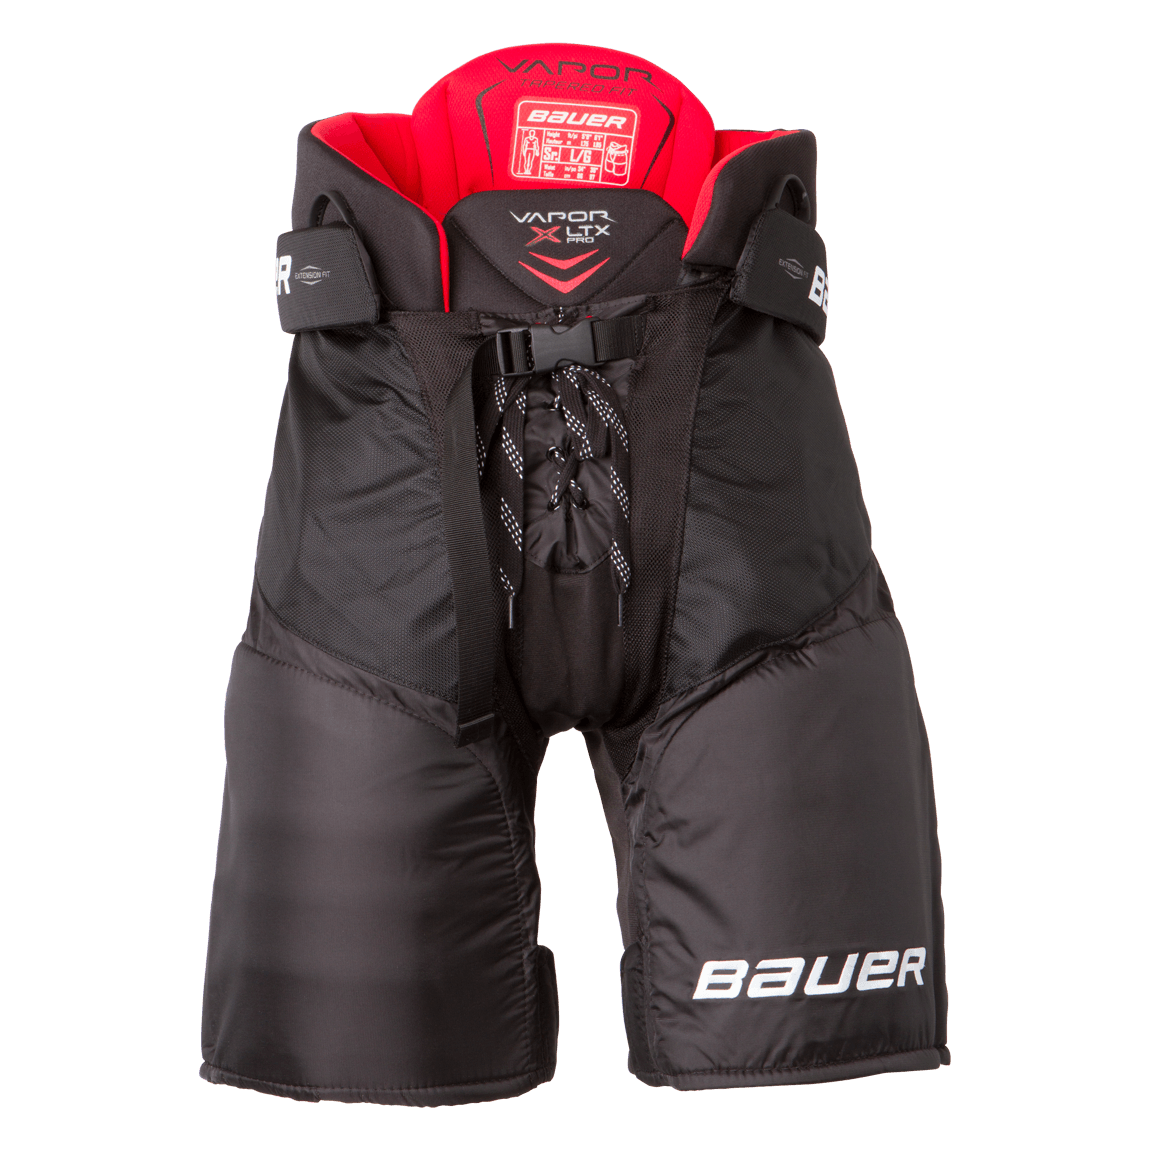 Vapor XLTX Pro Hockey Pants - Senior - Sports Excellence